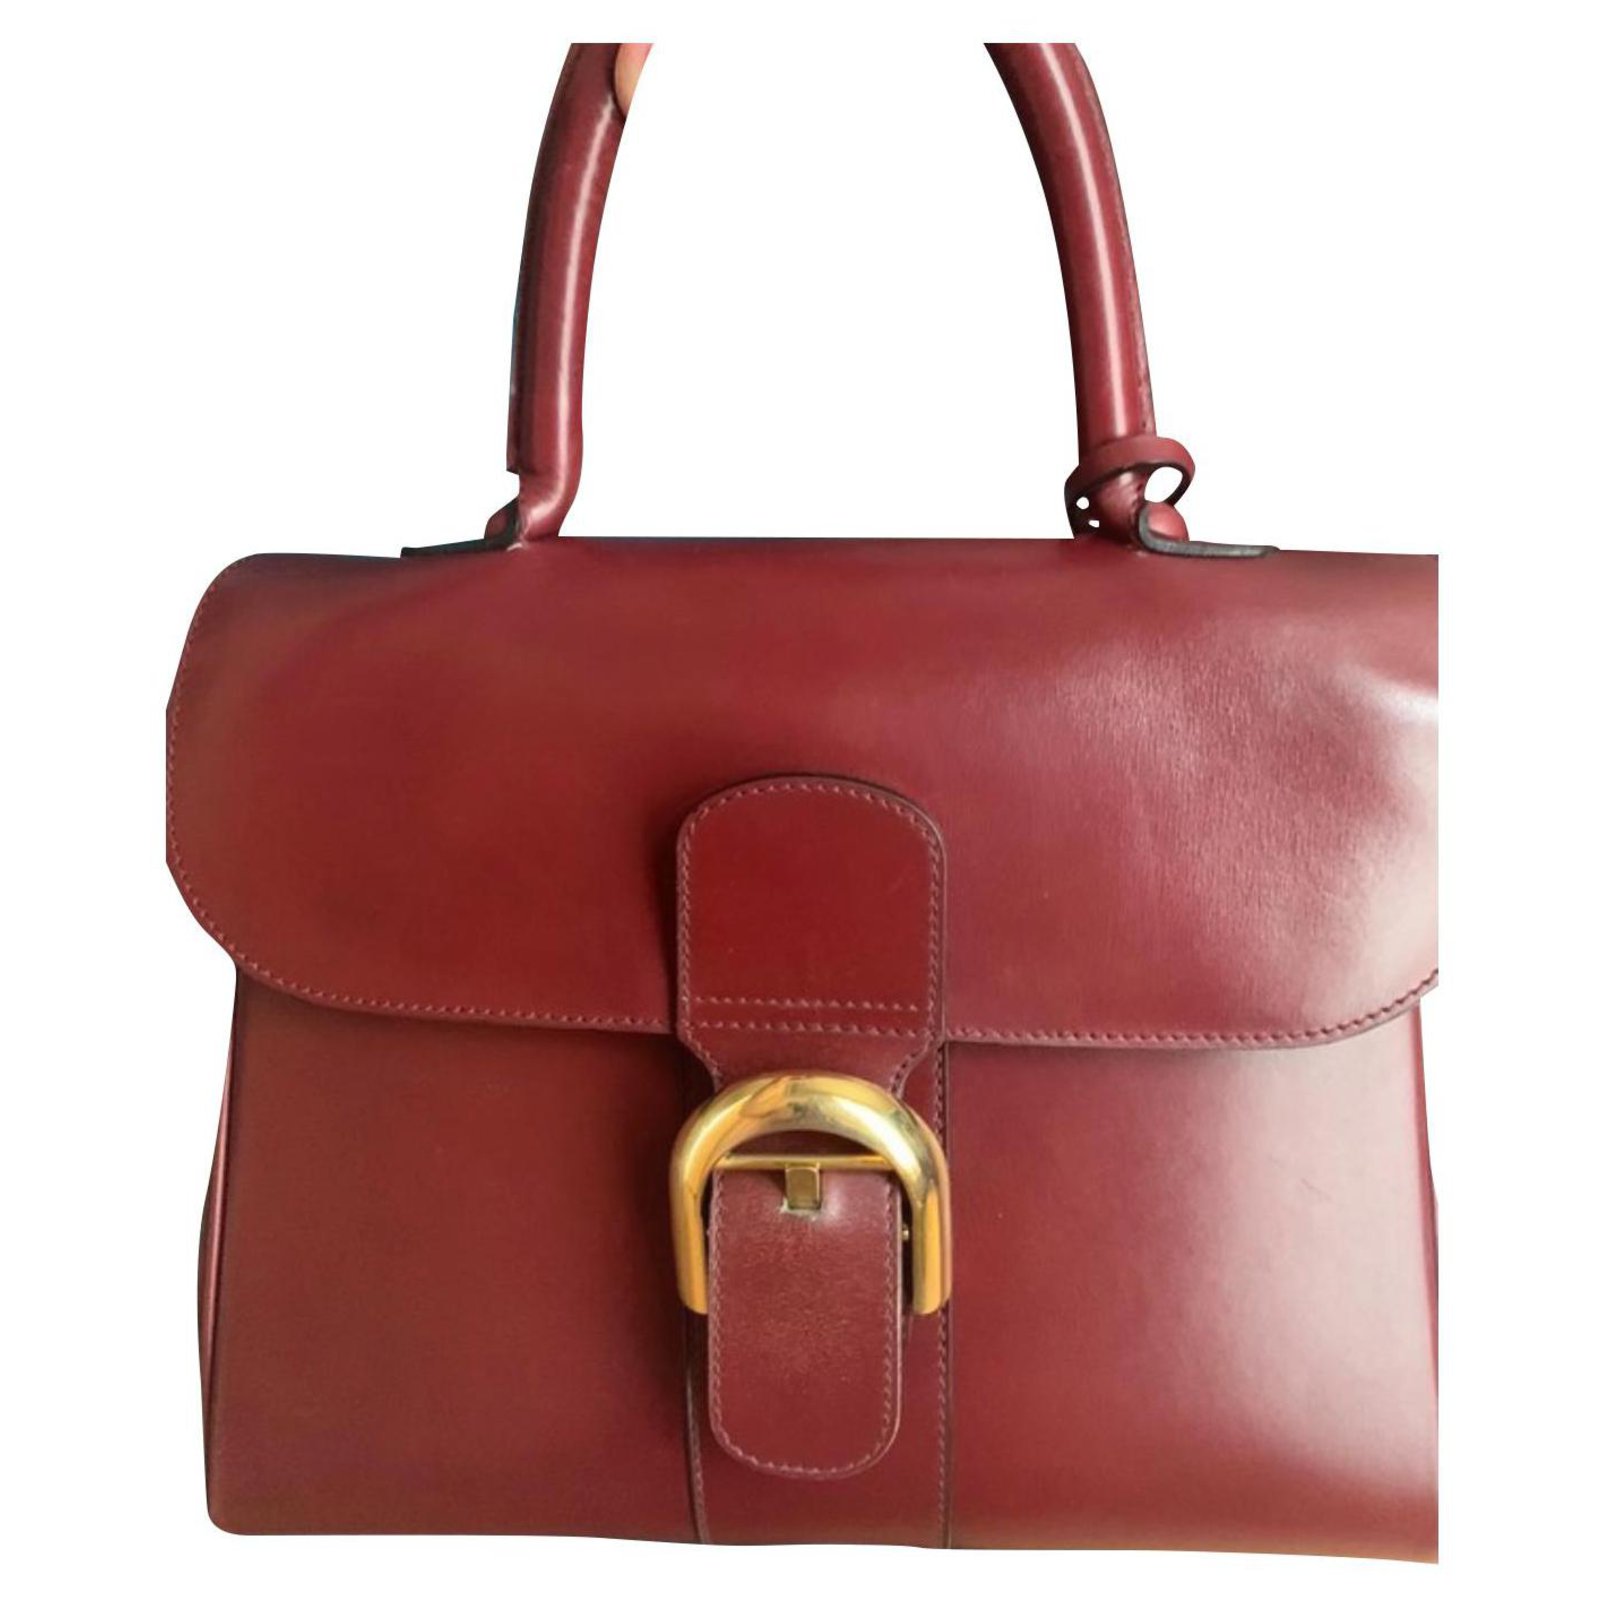 Delvaux, Bags, Vintage Red Delvaux Bag